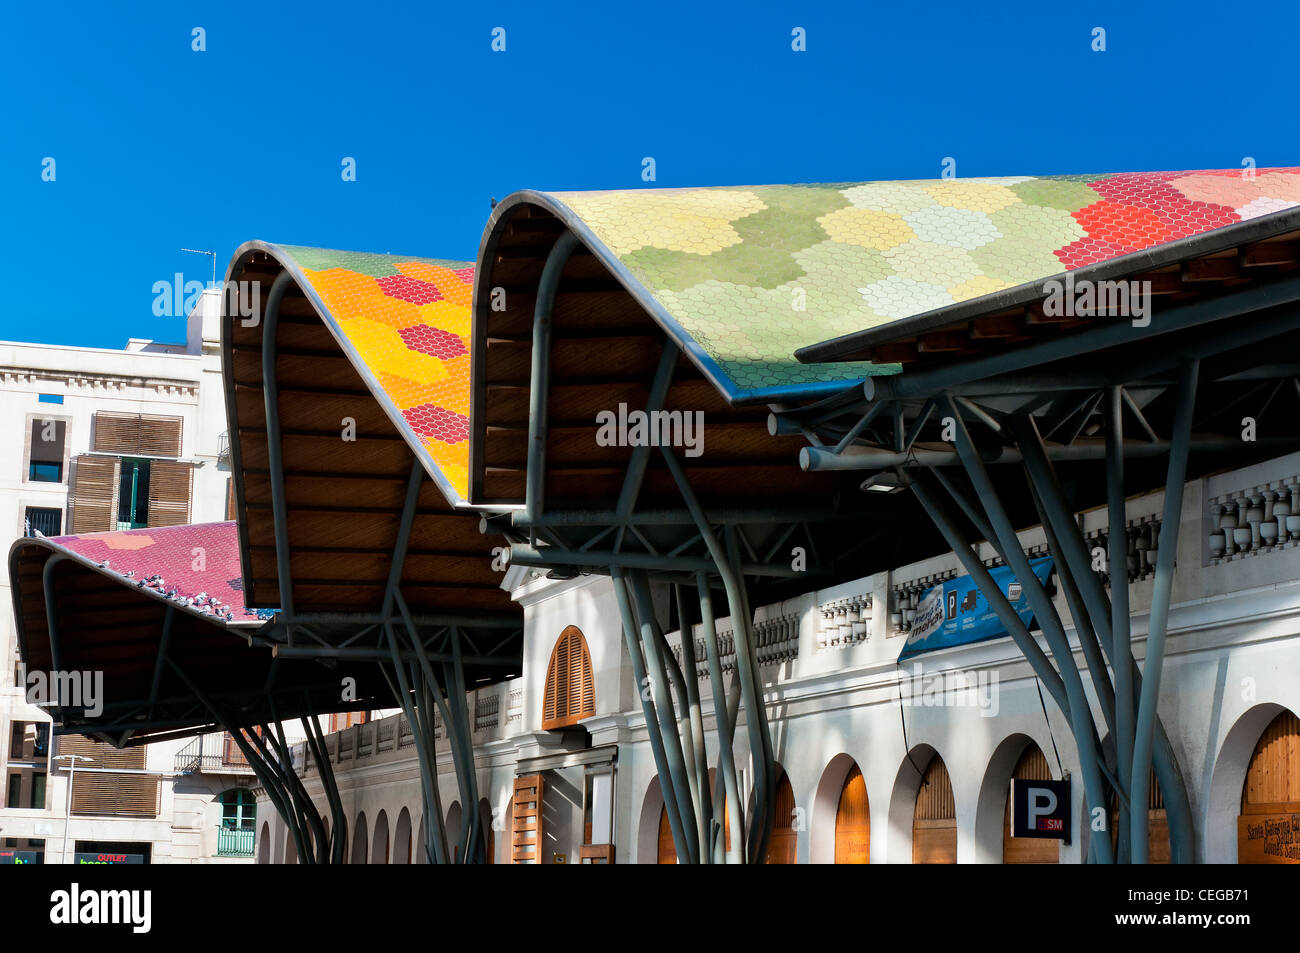 Vue sur le toit ondulant colorés,Marché de Santa Caterina (Mercat Santa Caterina), Barcelone, Catalogne, Espagne Banque D'Images